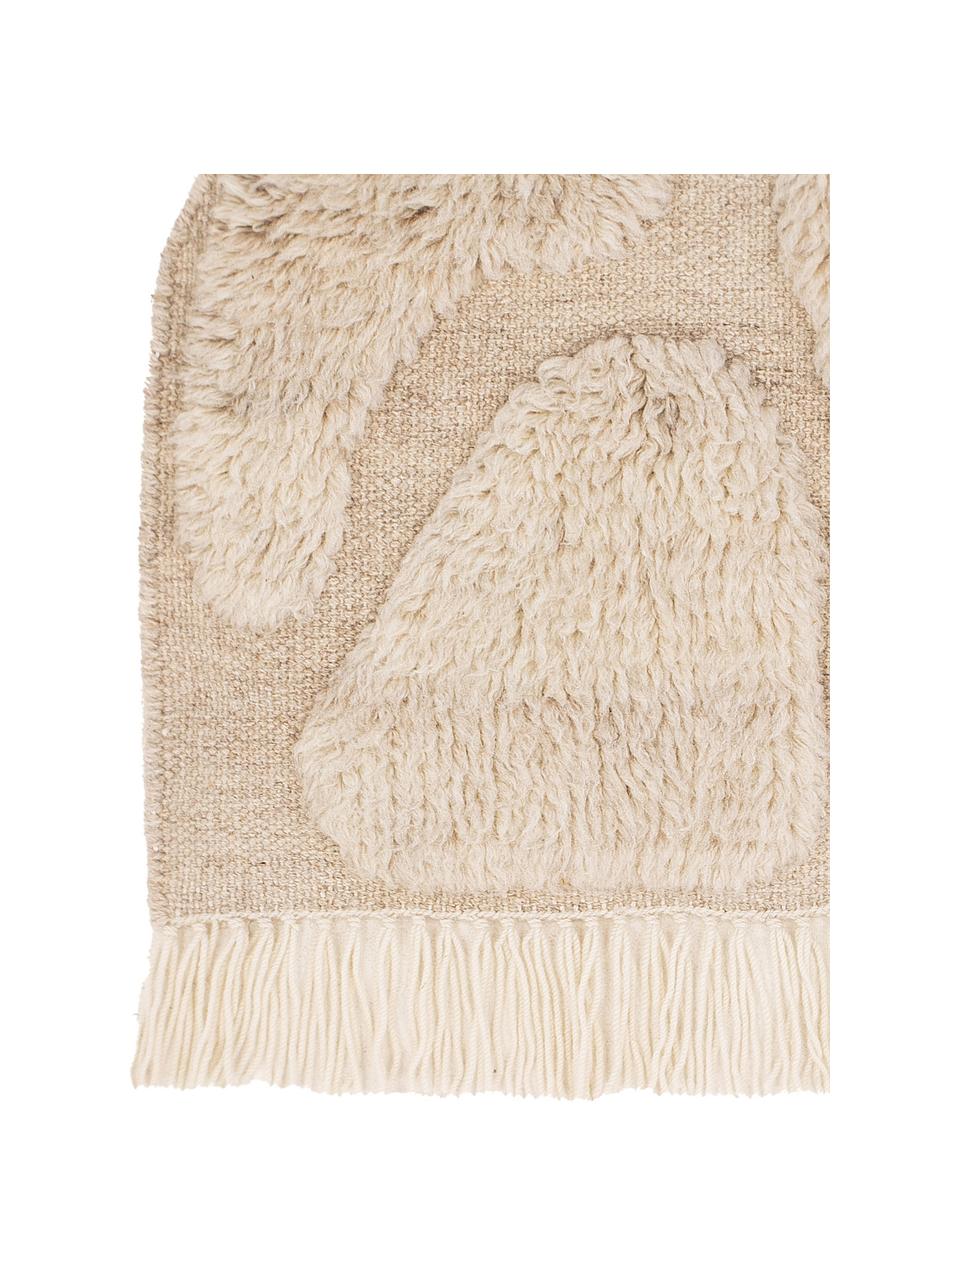 Grote wandobject Jakobsö van wol met franjes, 100% wol, Beige, B 62 x H 50 cm